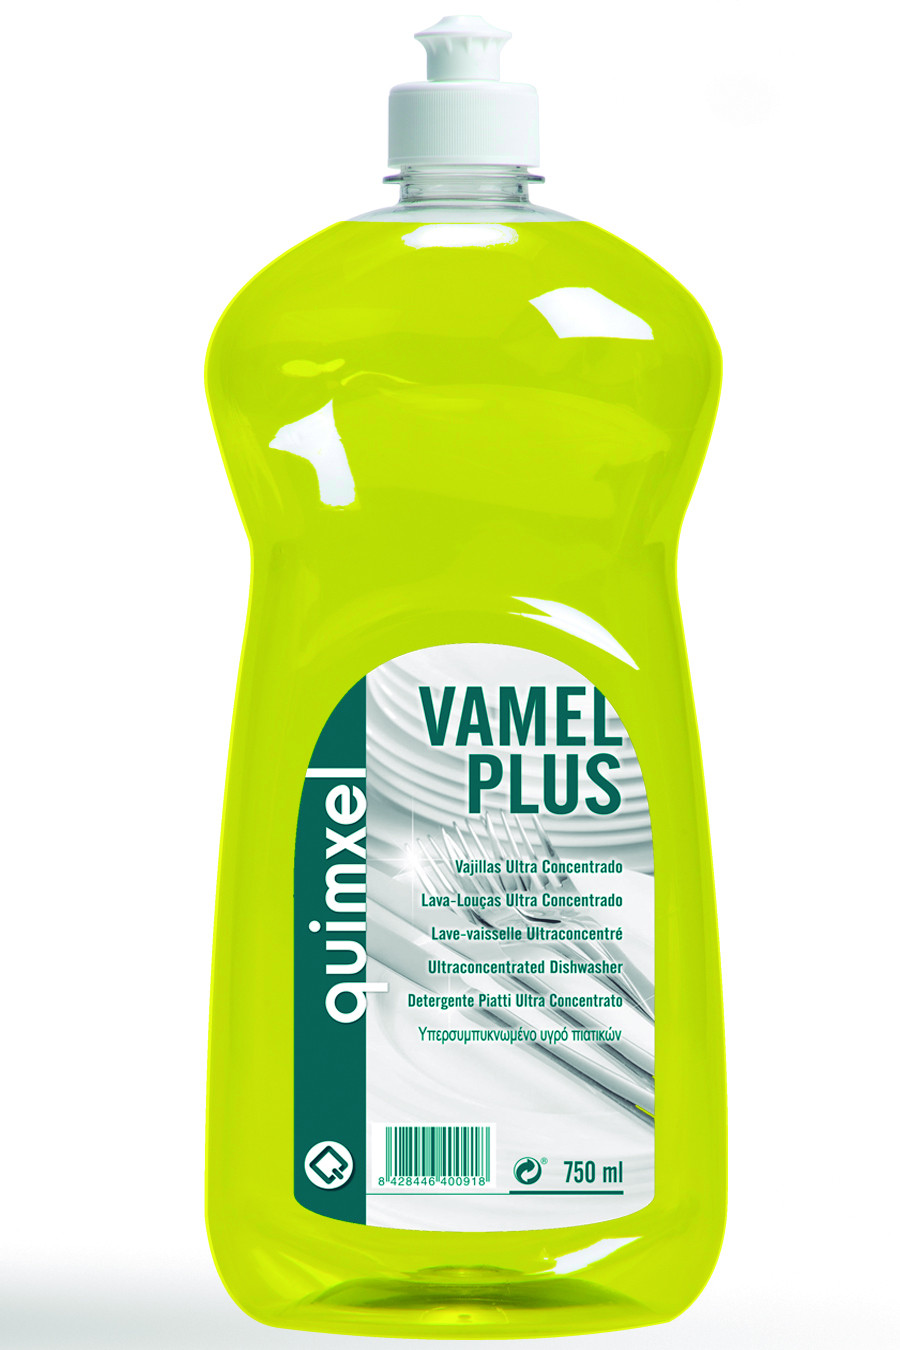 Detergente Vajillas, Vamel Plus 750ml y 5L